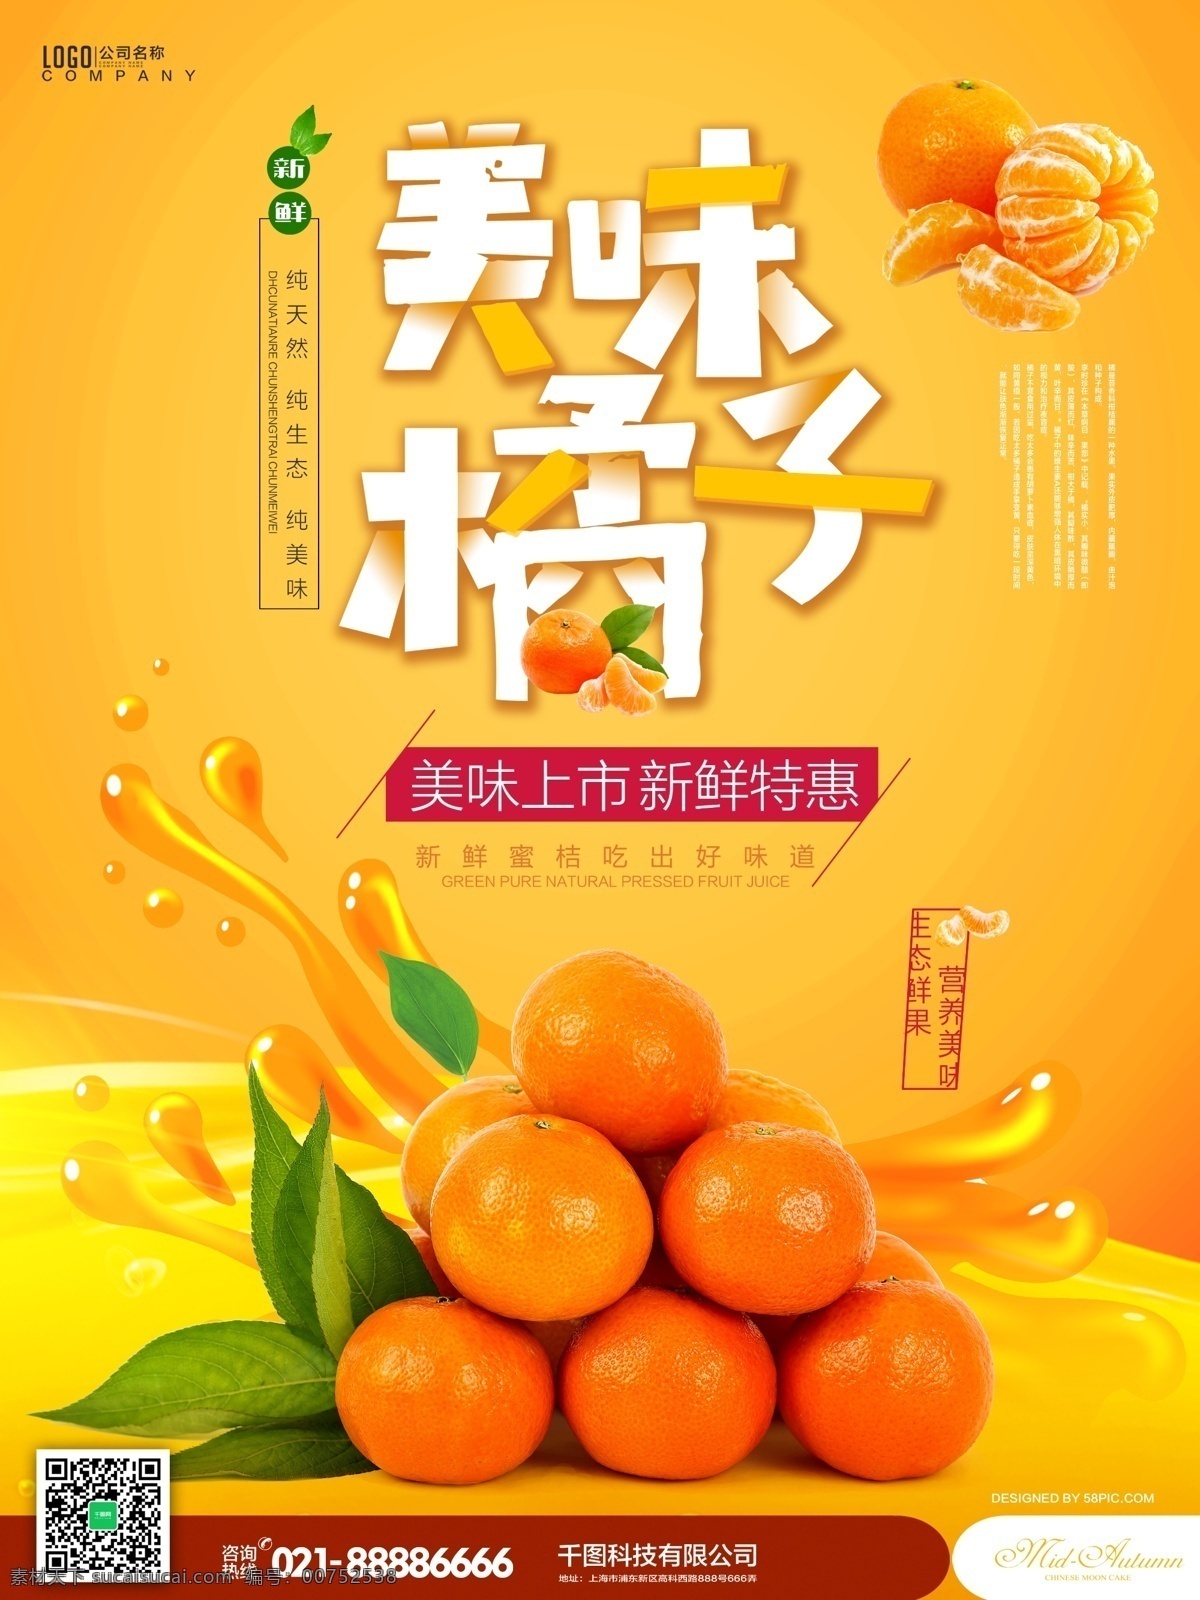 橙色 美食 水果 美味 橘子 活动 促销 海报 美味橘子 促销海报 柑橘 蜜橘 美味海报 美食海报 叶子 果汁